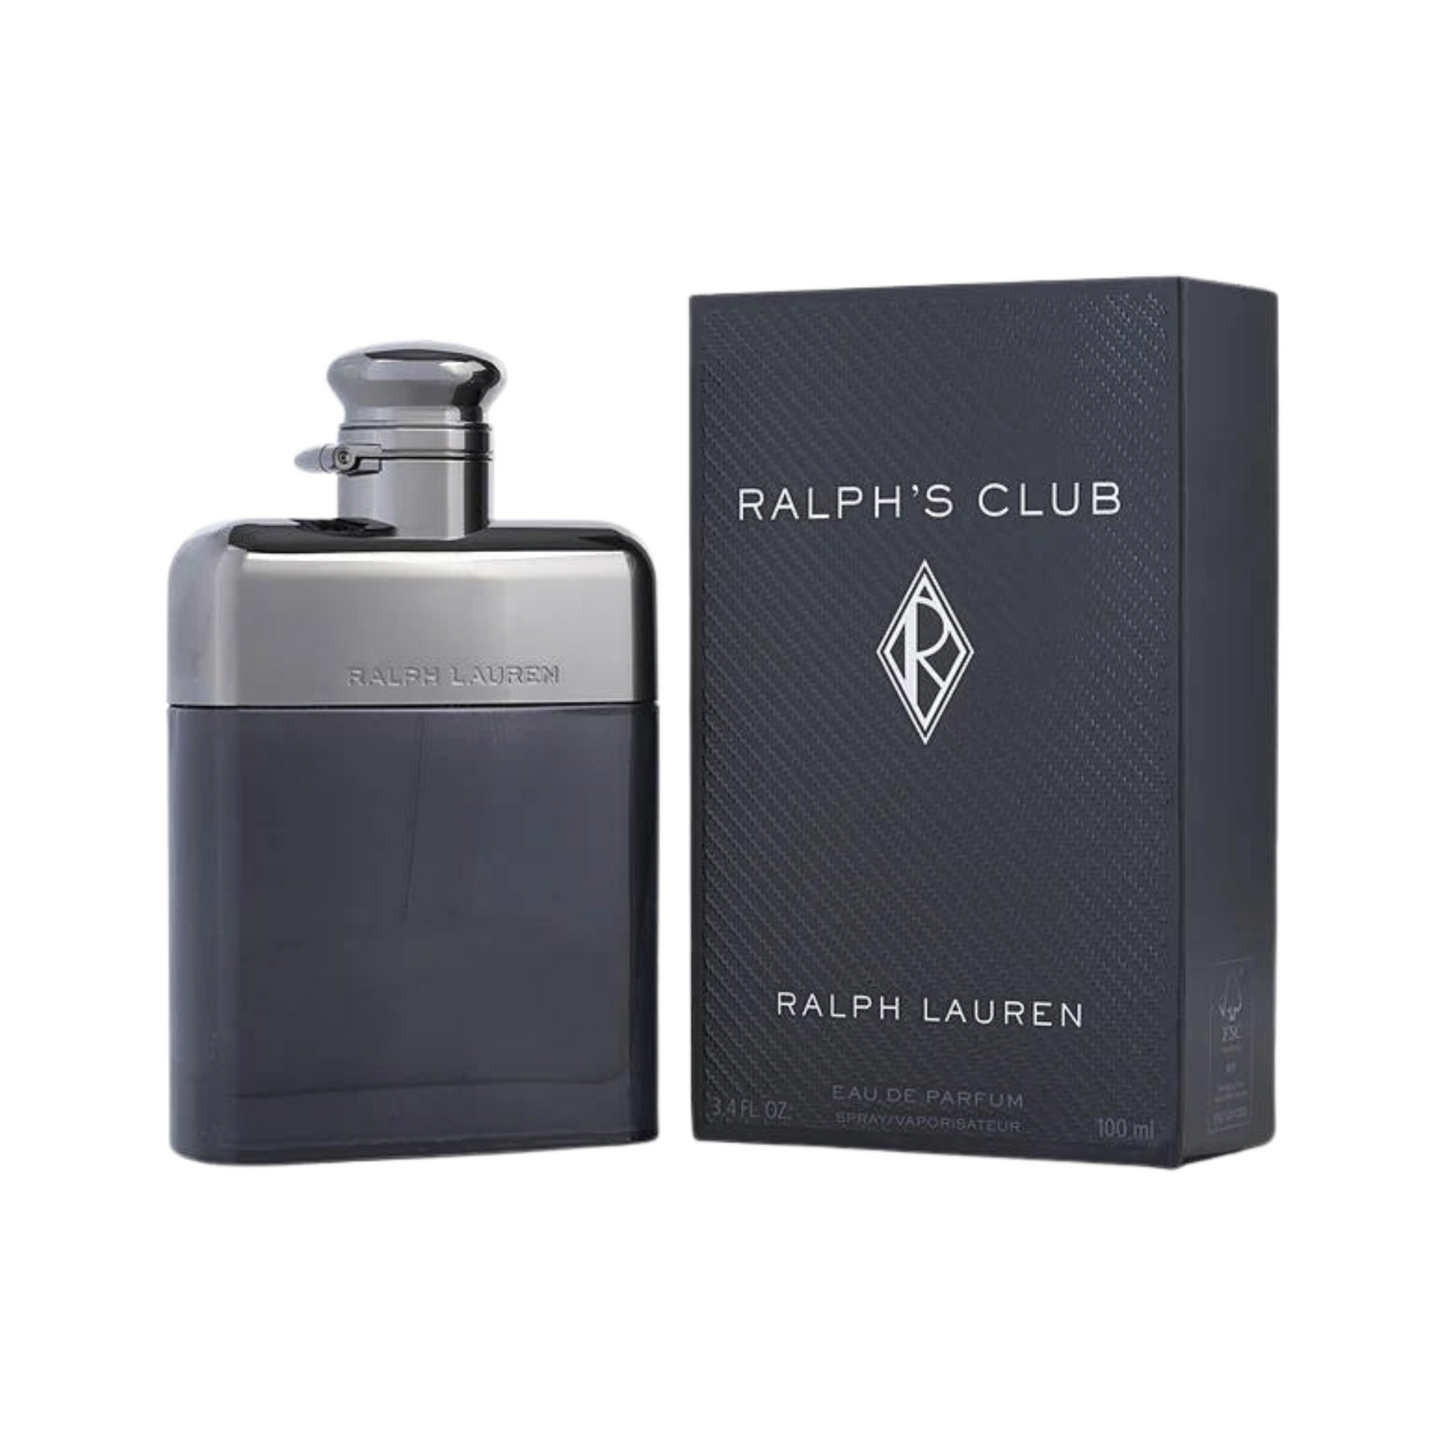 Ralph's Club Eau De Parfum 100ml